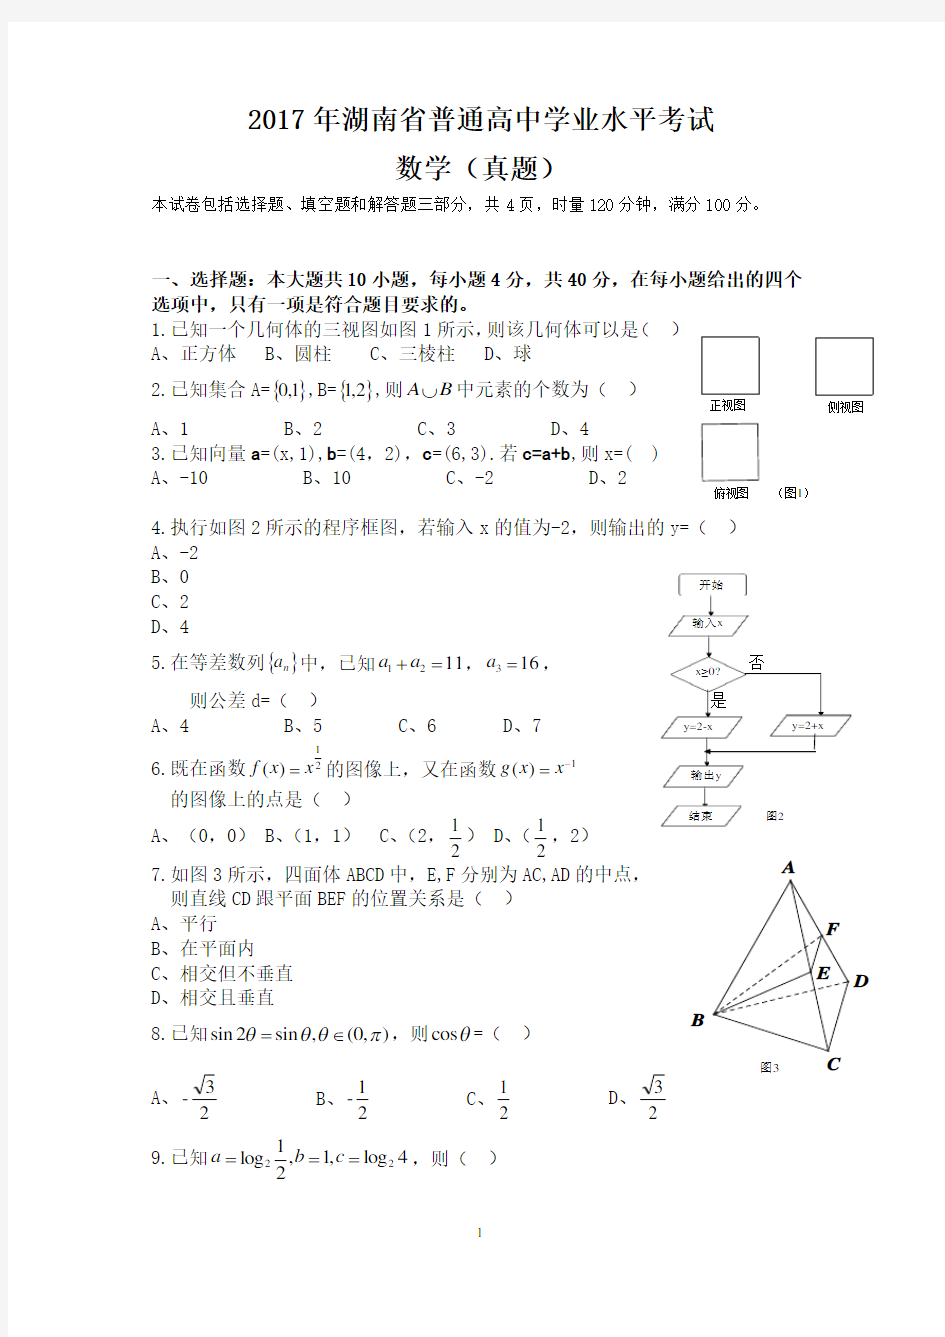 (完整版)2017年湖南省普通高中学业水平考试数学试卷及答案